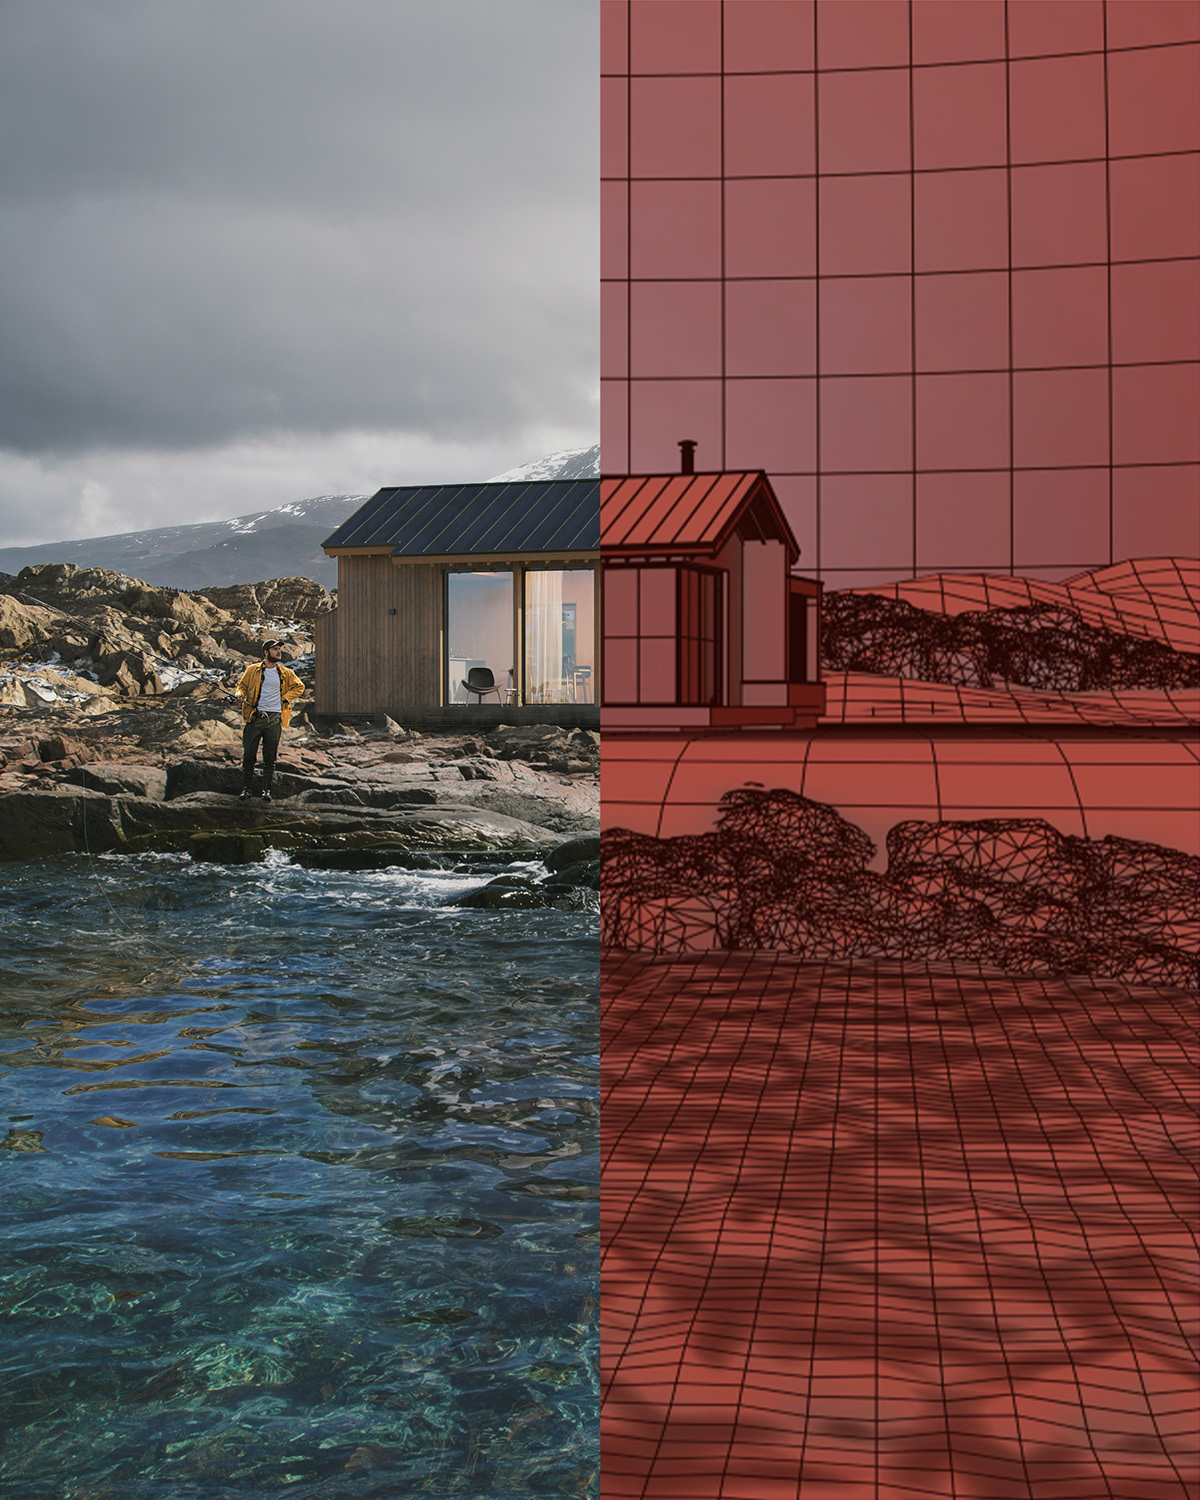 3ds max architecture cabin corona render  corona renderer interior design  Landscape CGI visualization sea